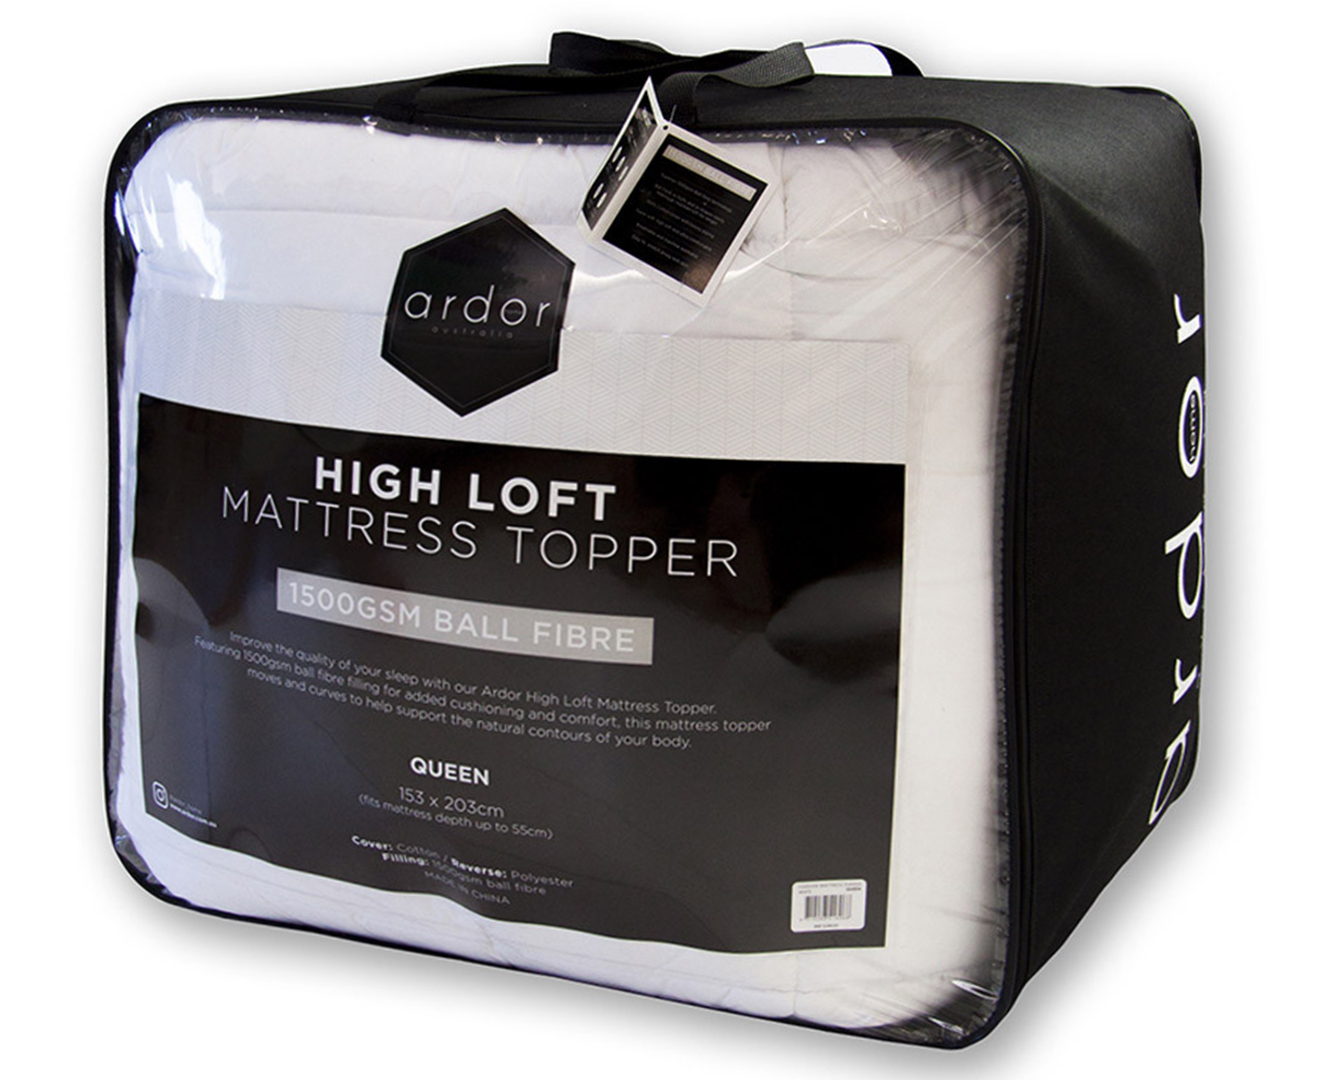 ardor 1500gsm high loft mattress topper review